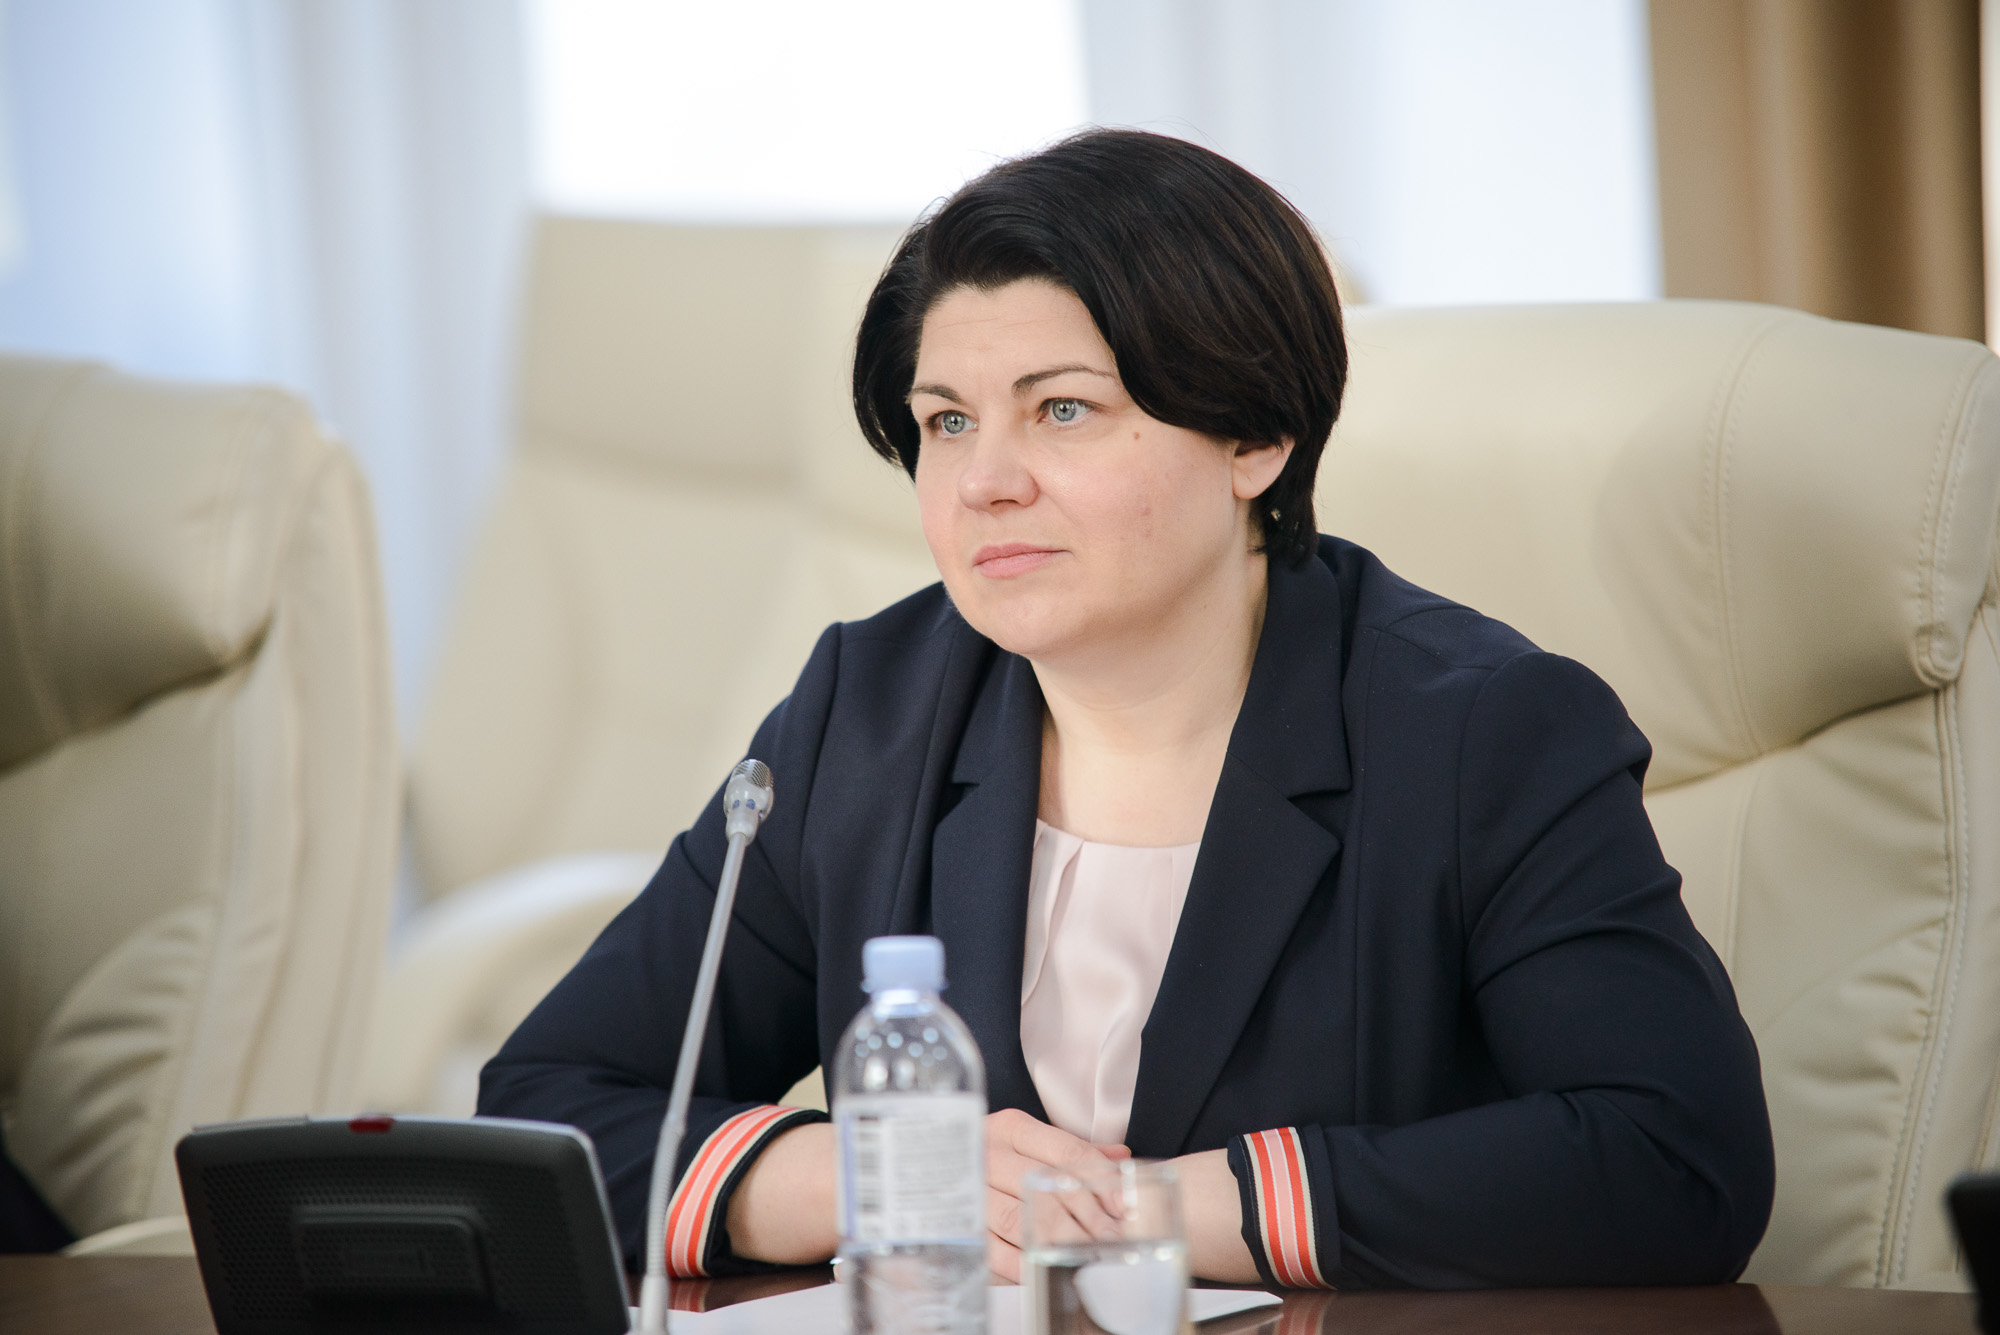 Natalia Gavrilița a plecat de la Guvern cu unele cadouri care le-a primit în cadrul întâlnirilor oficiale